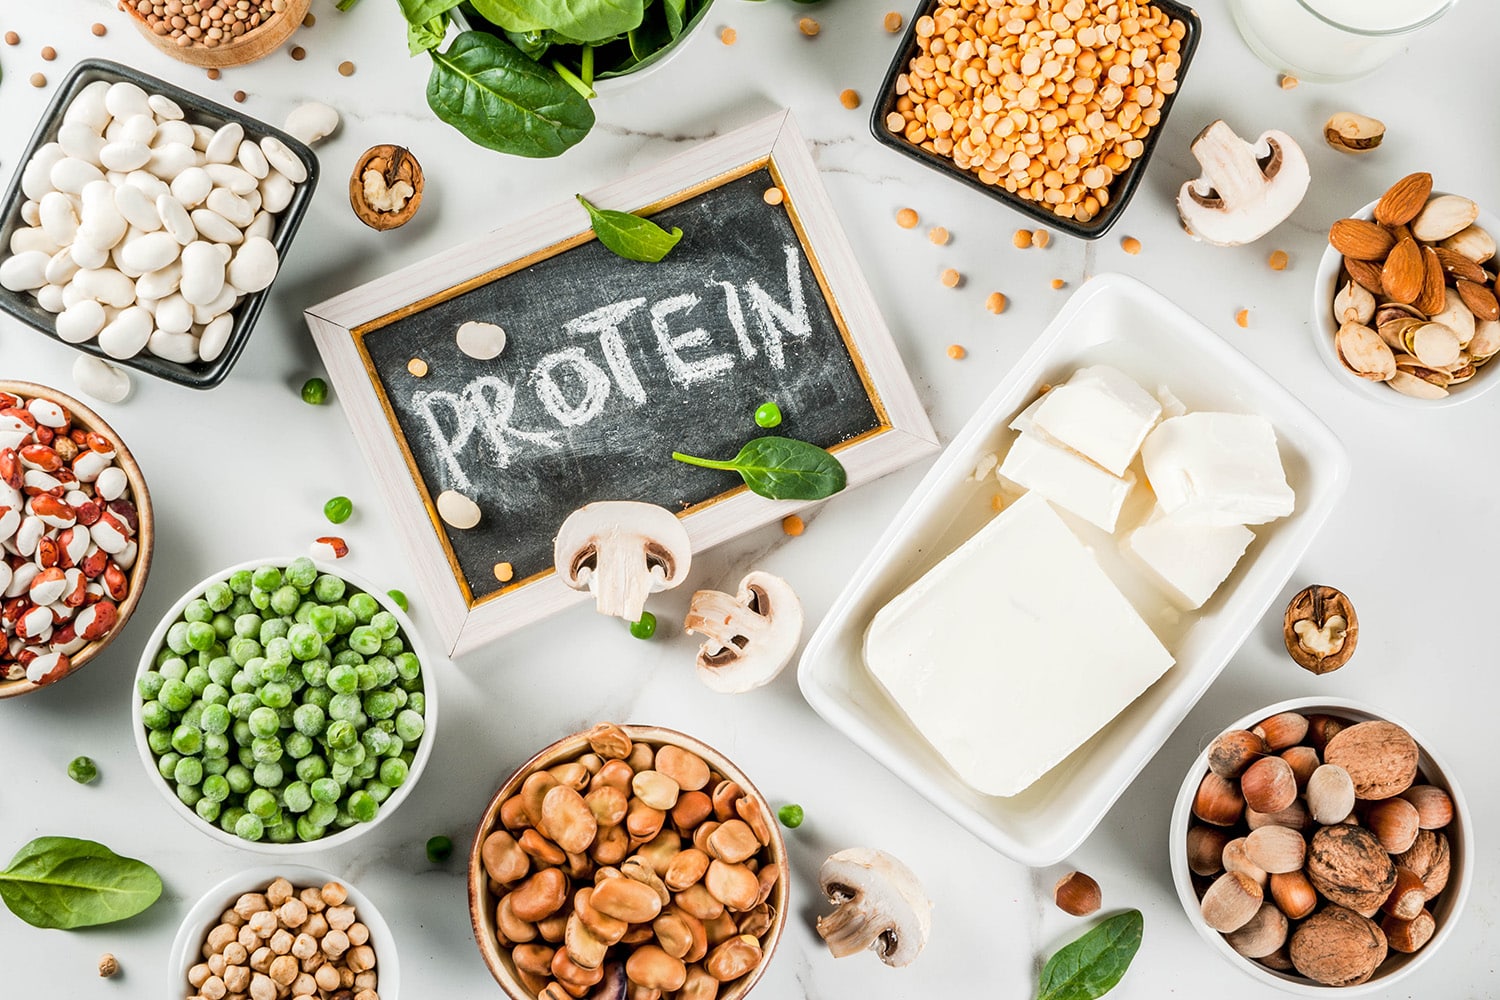 Proteine naturali e salutari come tofu, piselli, noci, formaggio, fagioli e lenticchie